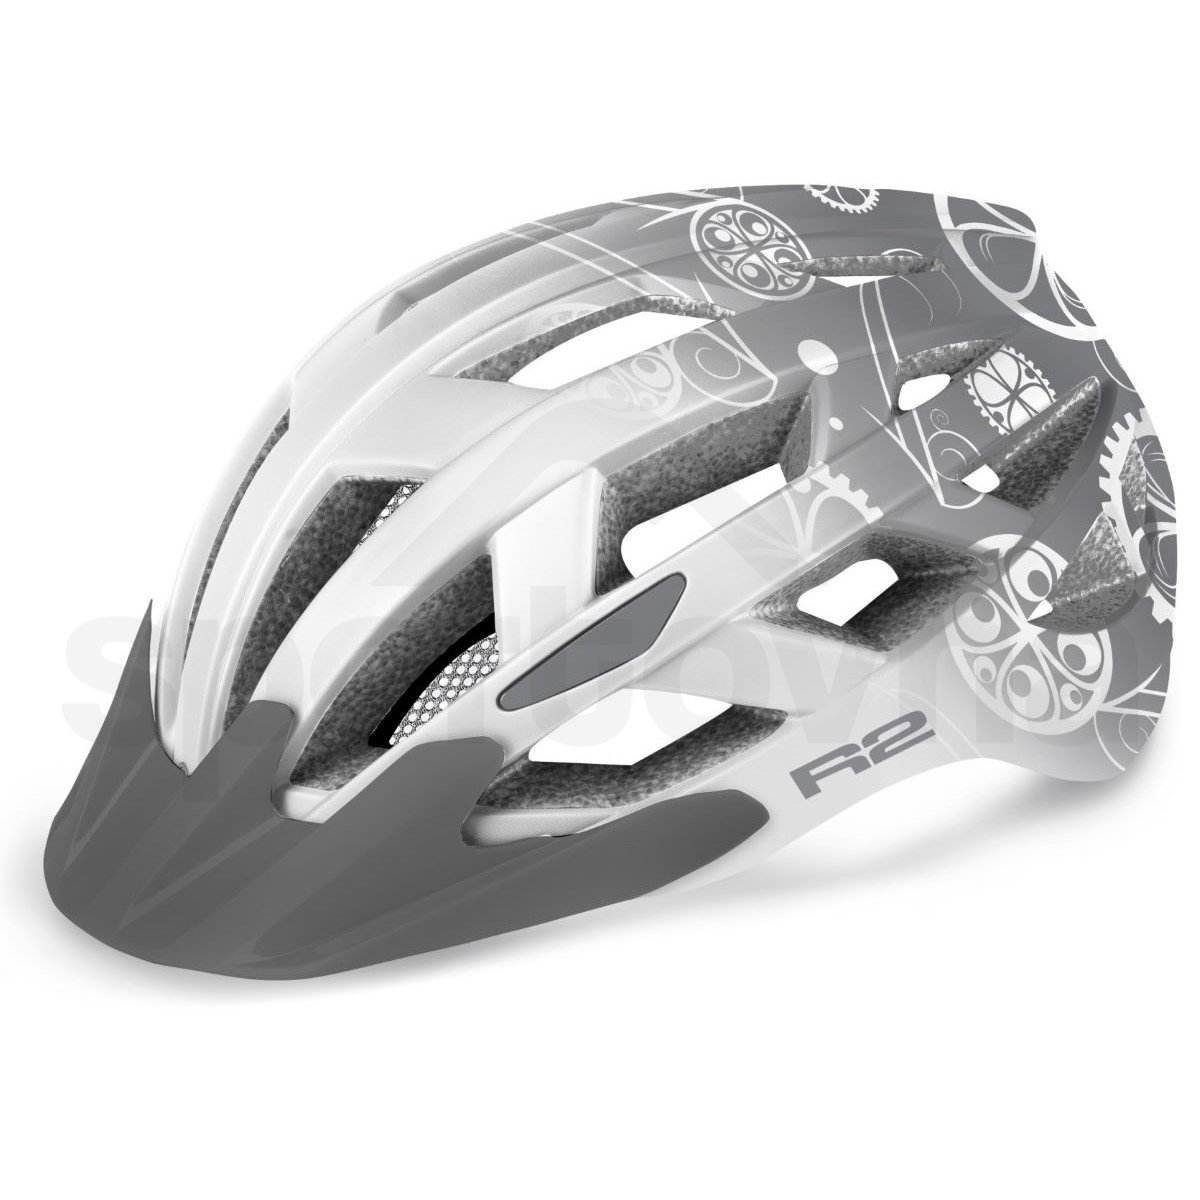 Cyklo helma R2 Lumen J - bílá/šedá